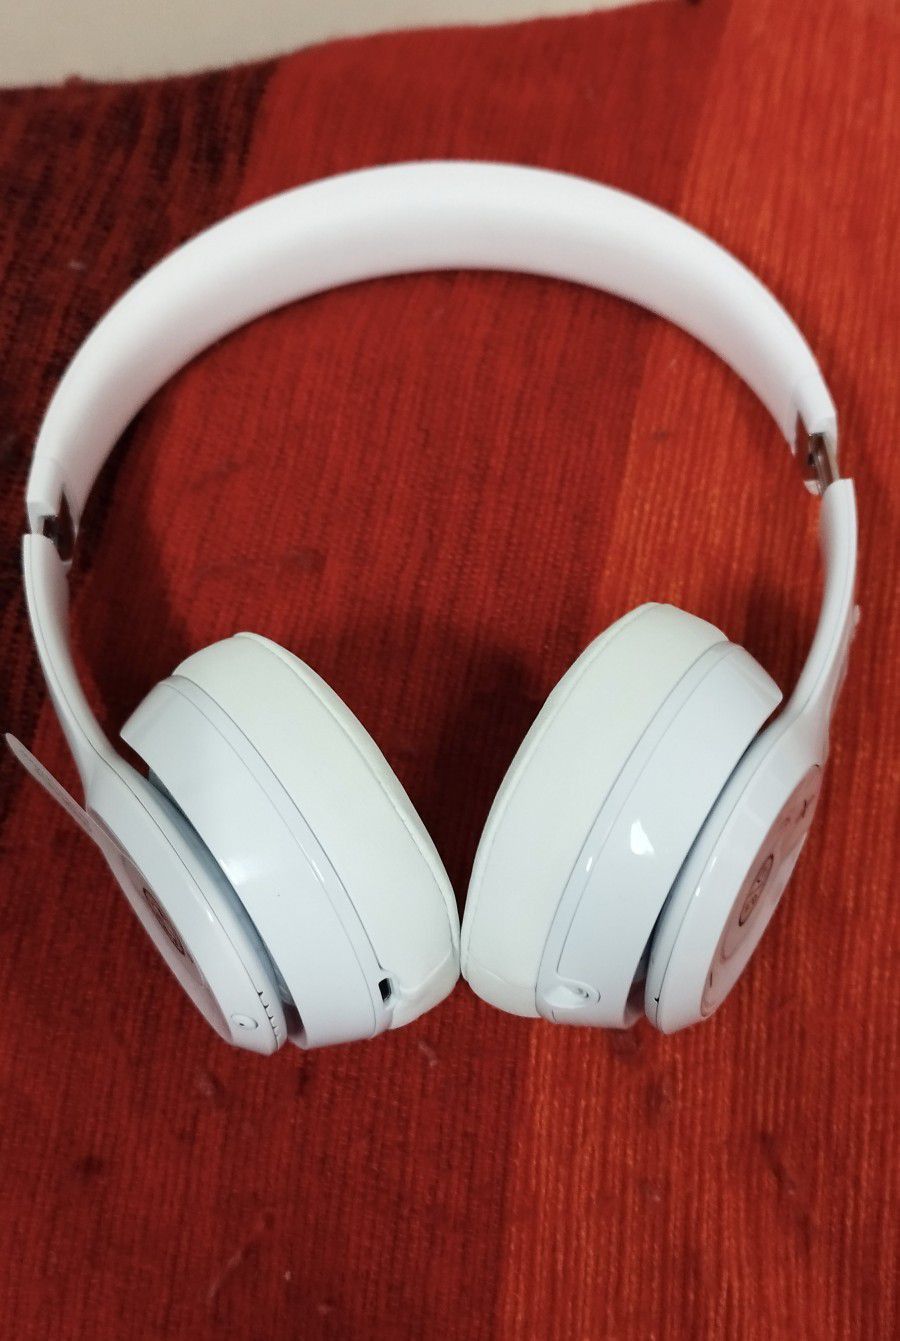 Beats Solo 3 Wireless on-ear Headphones

